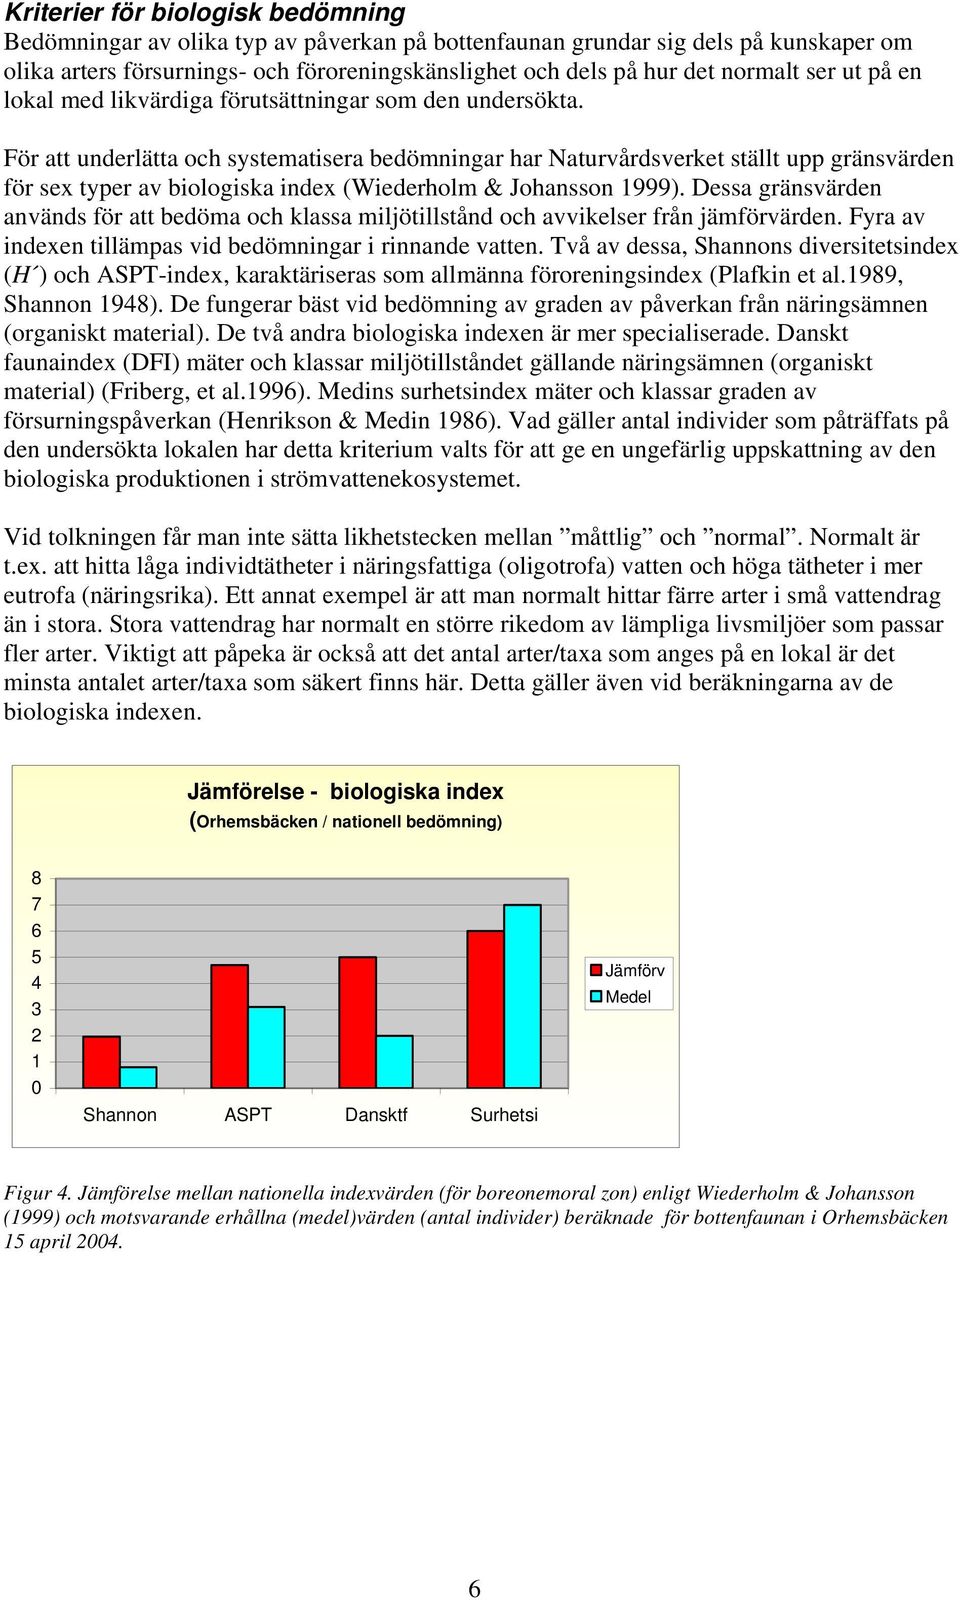 För att underlätta och systematisera bedömningar har Naturvårdsverket ställt upp gränsvärden för sex typer av biologiska index (Wiederholm & Johansson 1999).